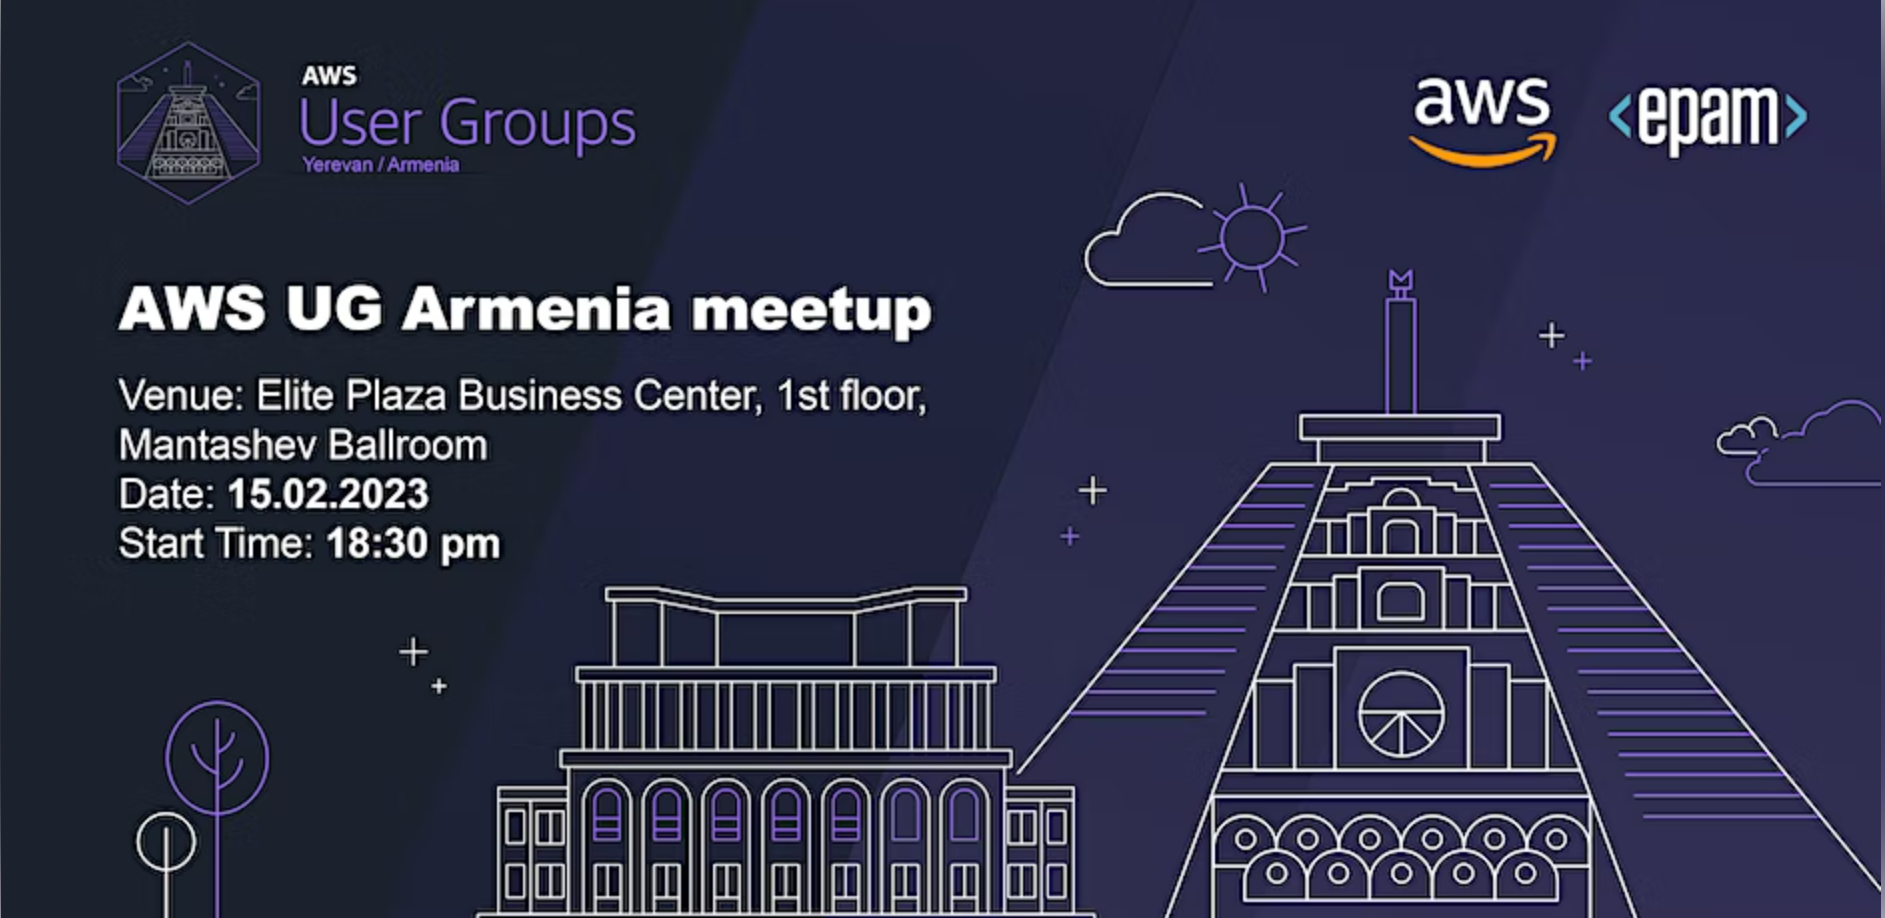 AWS UG Armenia Meetup